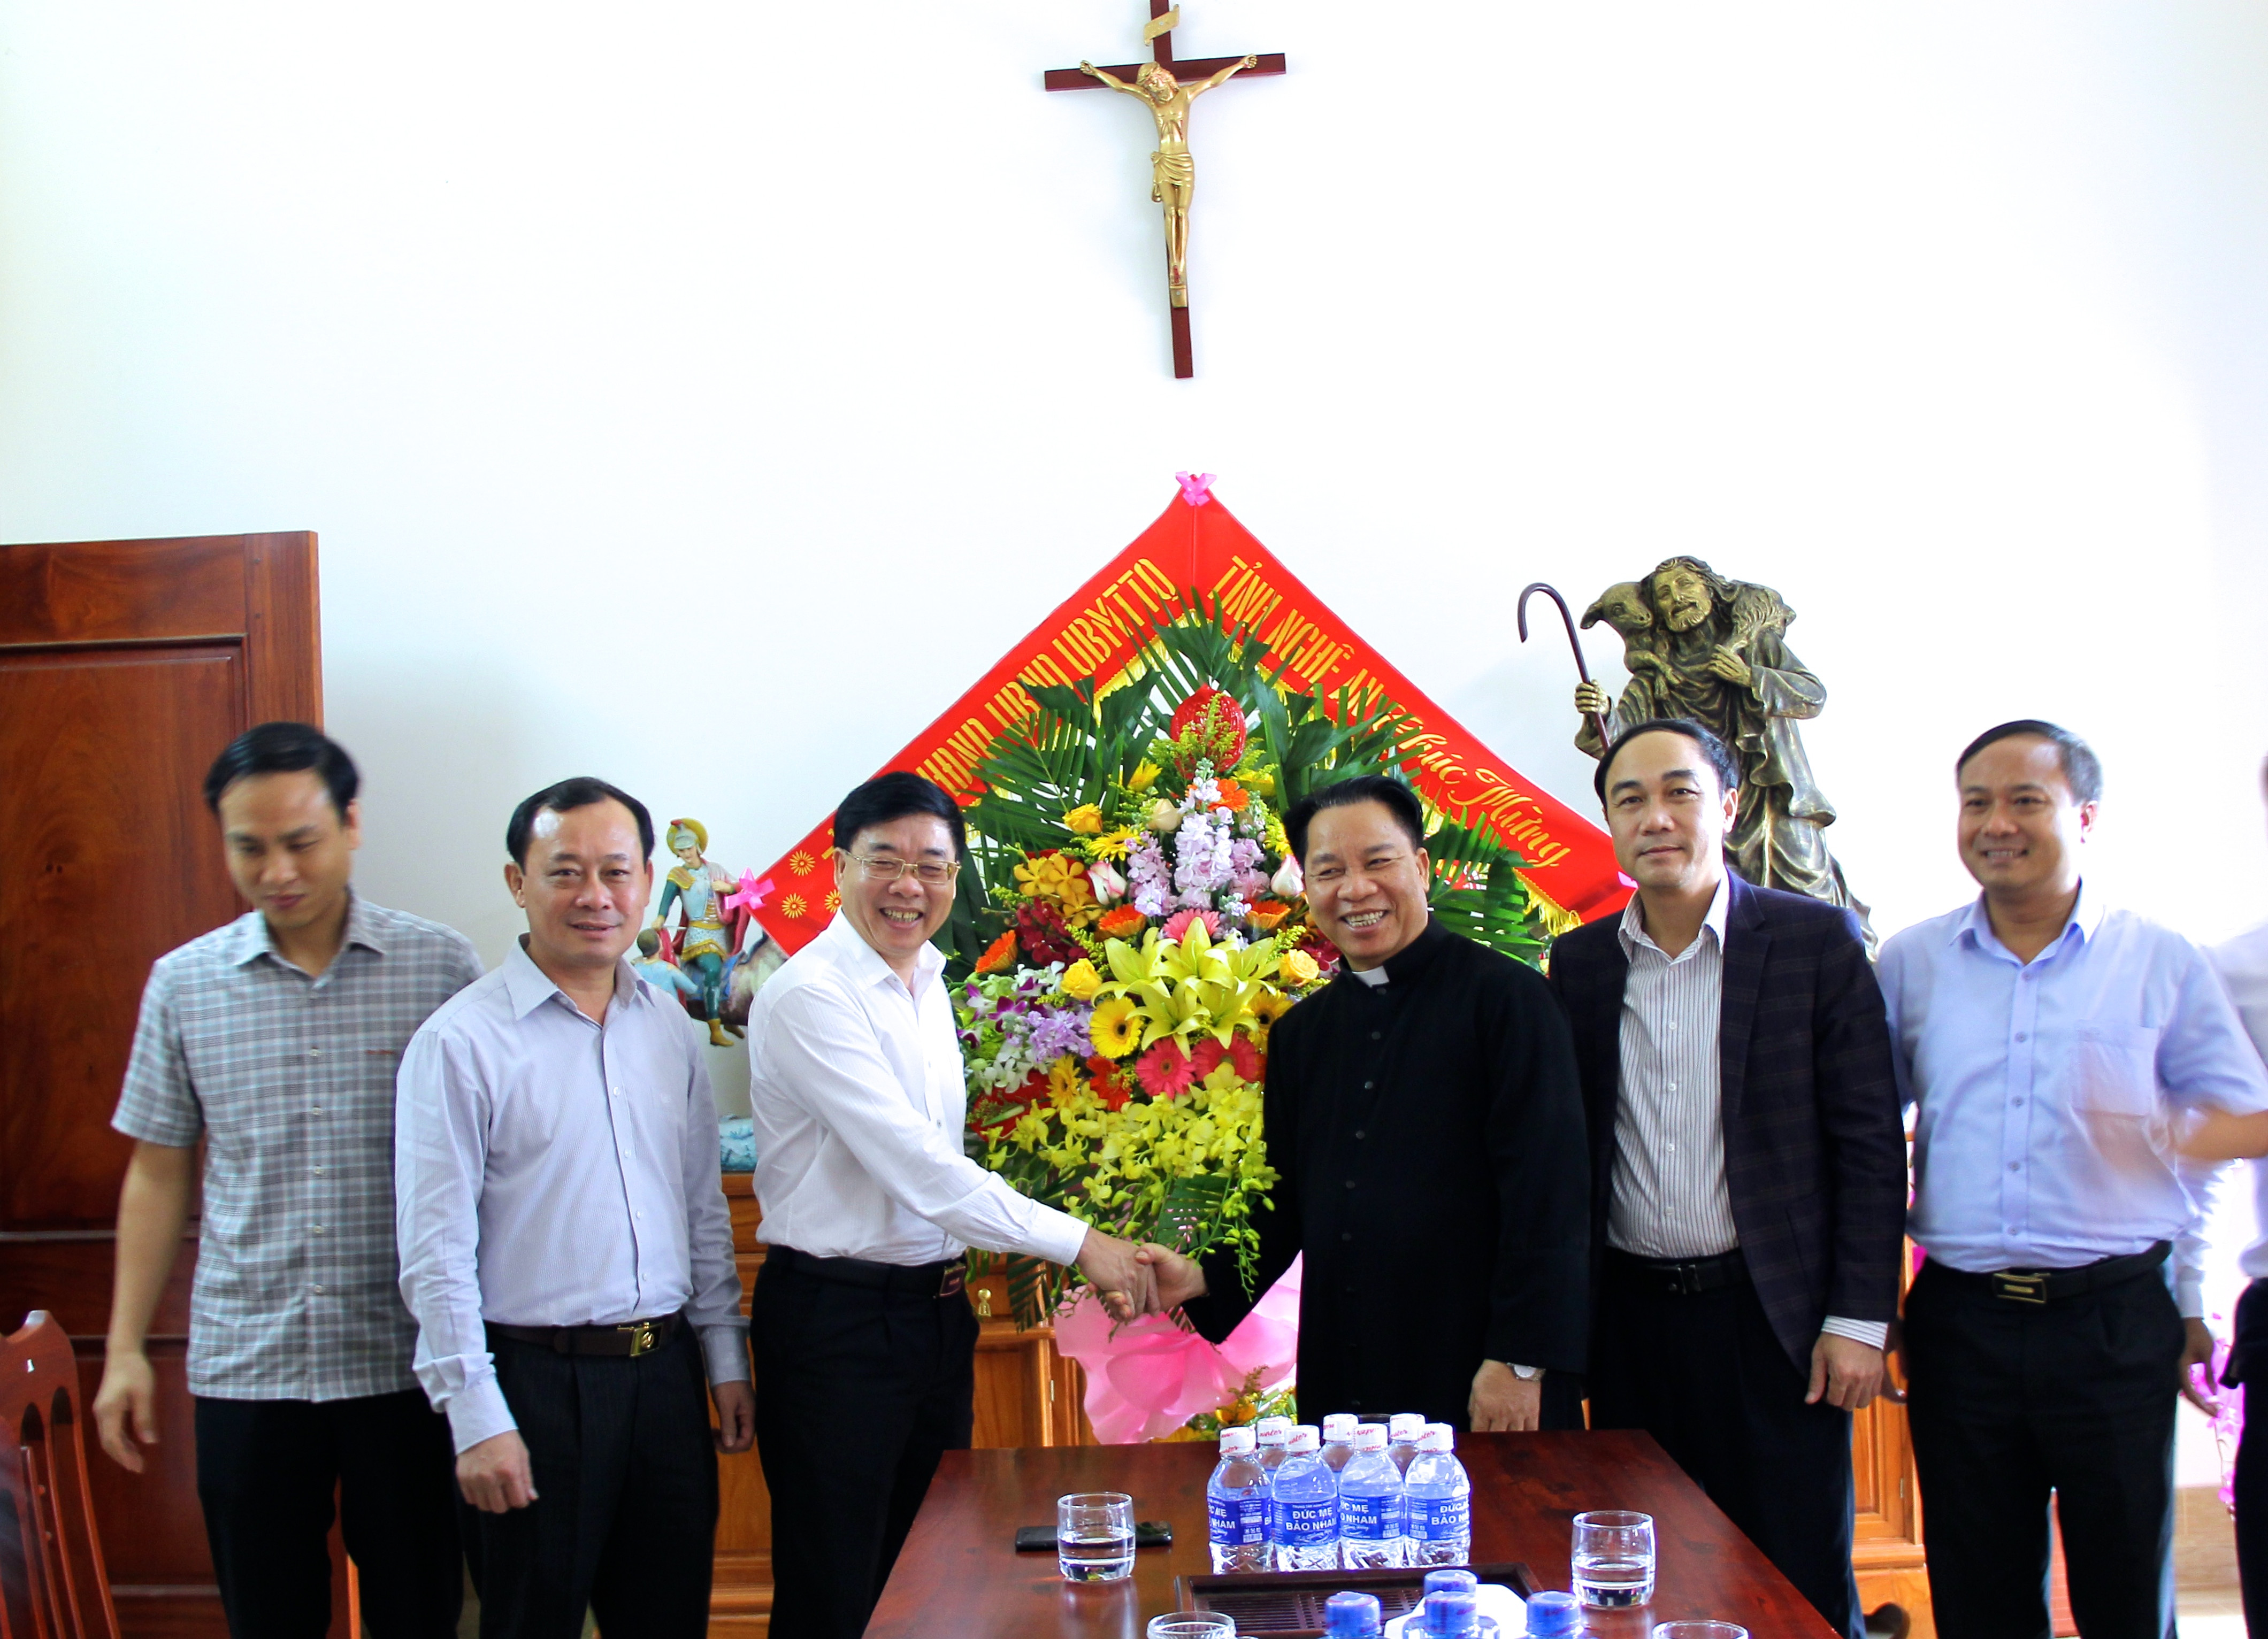 Phó Bí thư Tỉnh ủy Nguyễn Văn Thông cùng đoàn công tác tặng lẵng hoa tươi chúc mừng Giáng sinh tới giáo xứ Bảo Nham. Ảnh: Mỹ Nga